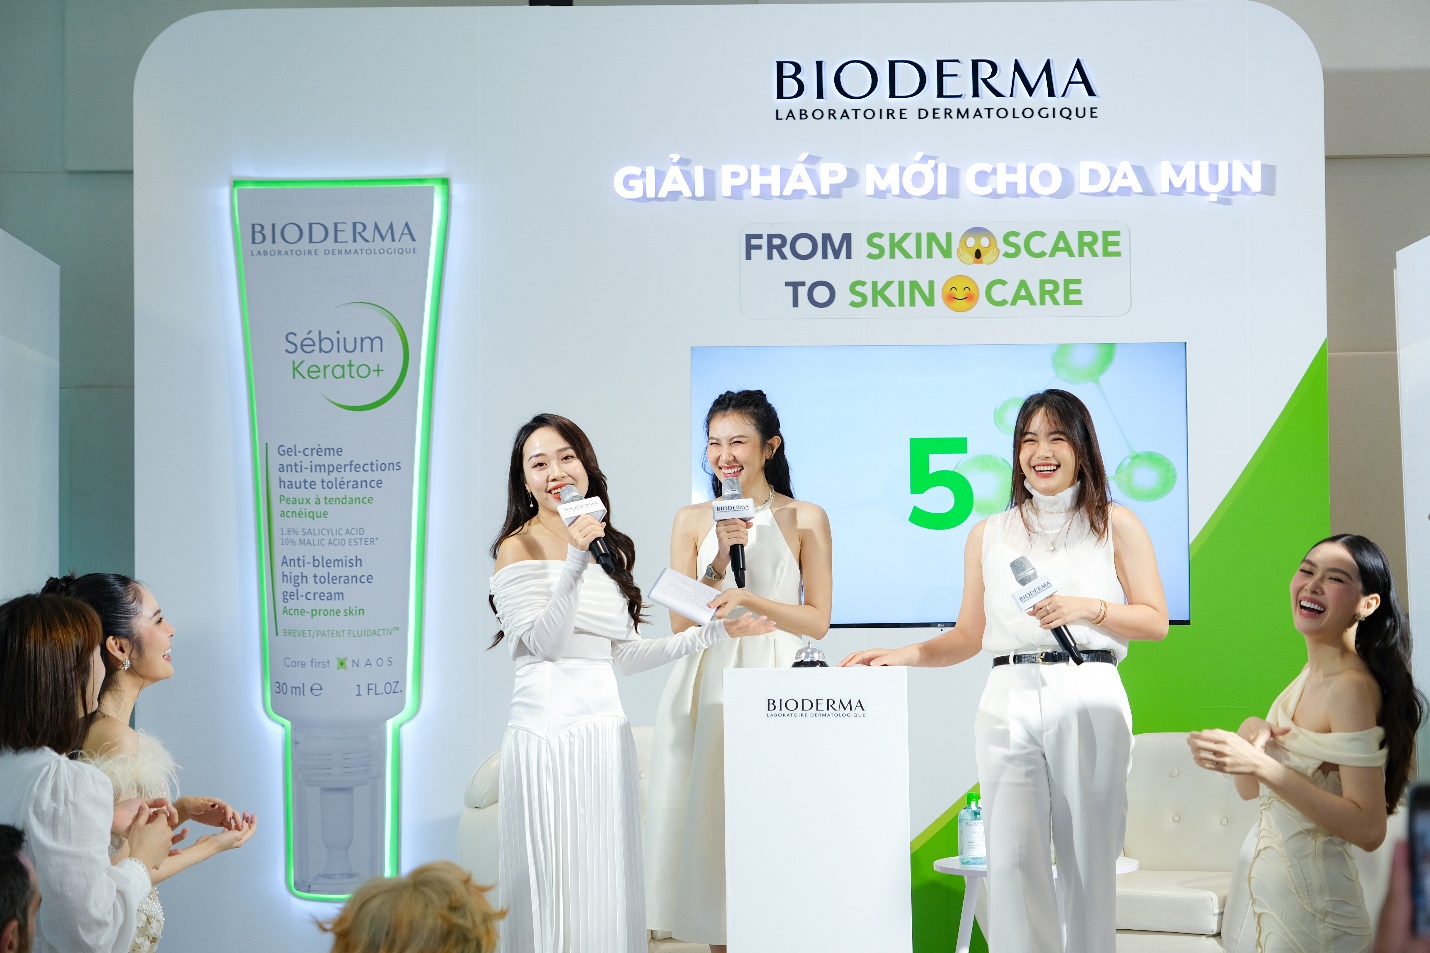 Khám phá giải pháp đột phá cho da mụn cùng dàn beauty blogger tại sự kiện của BIODERMA - Ảnh 4.